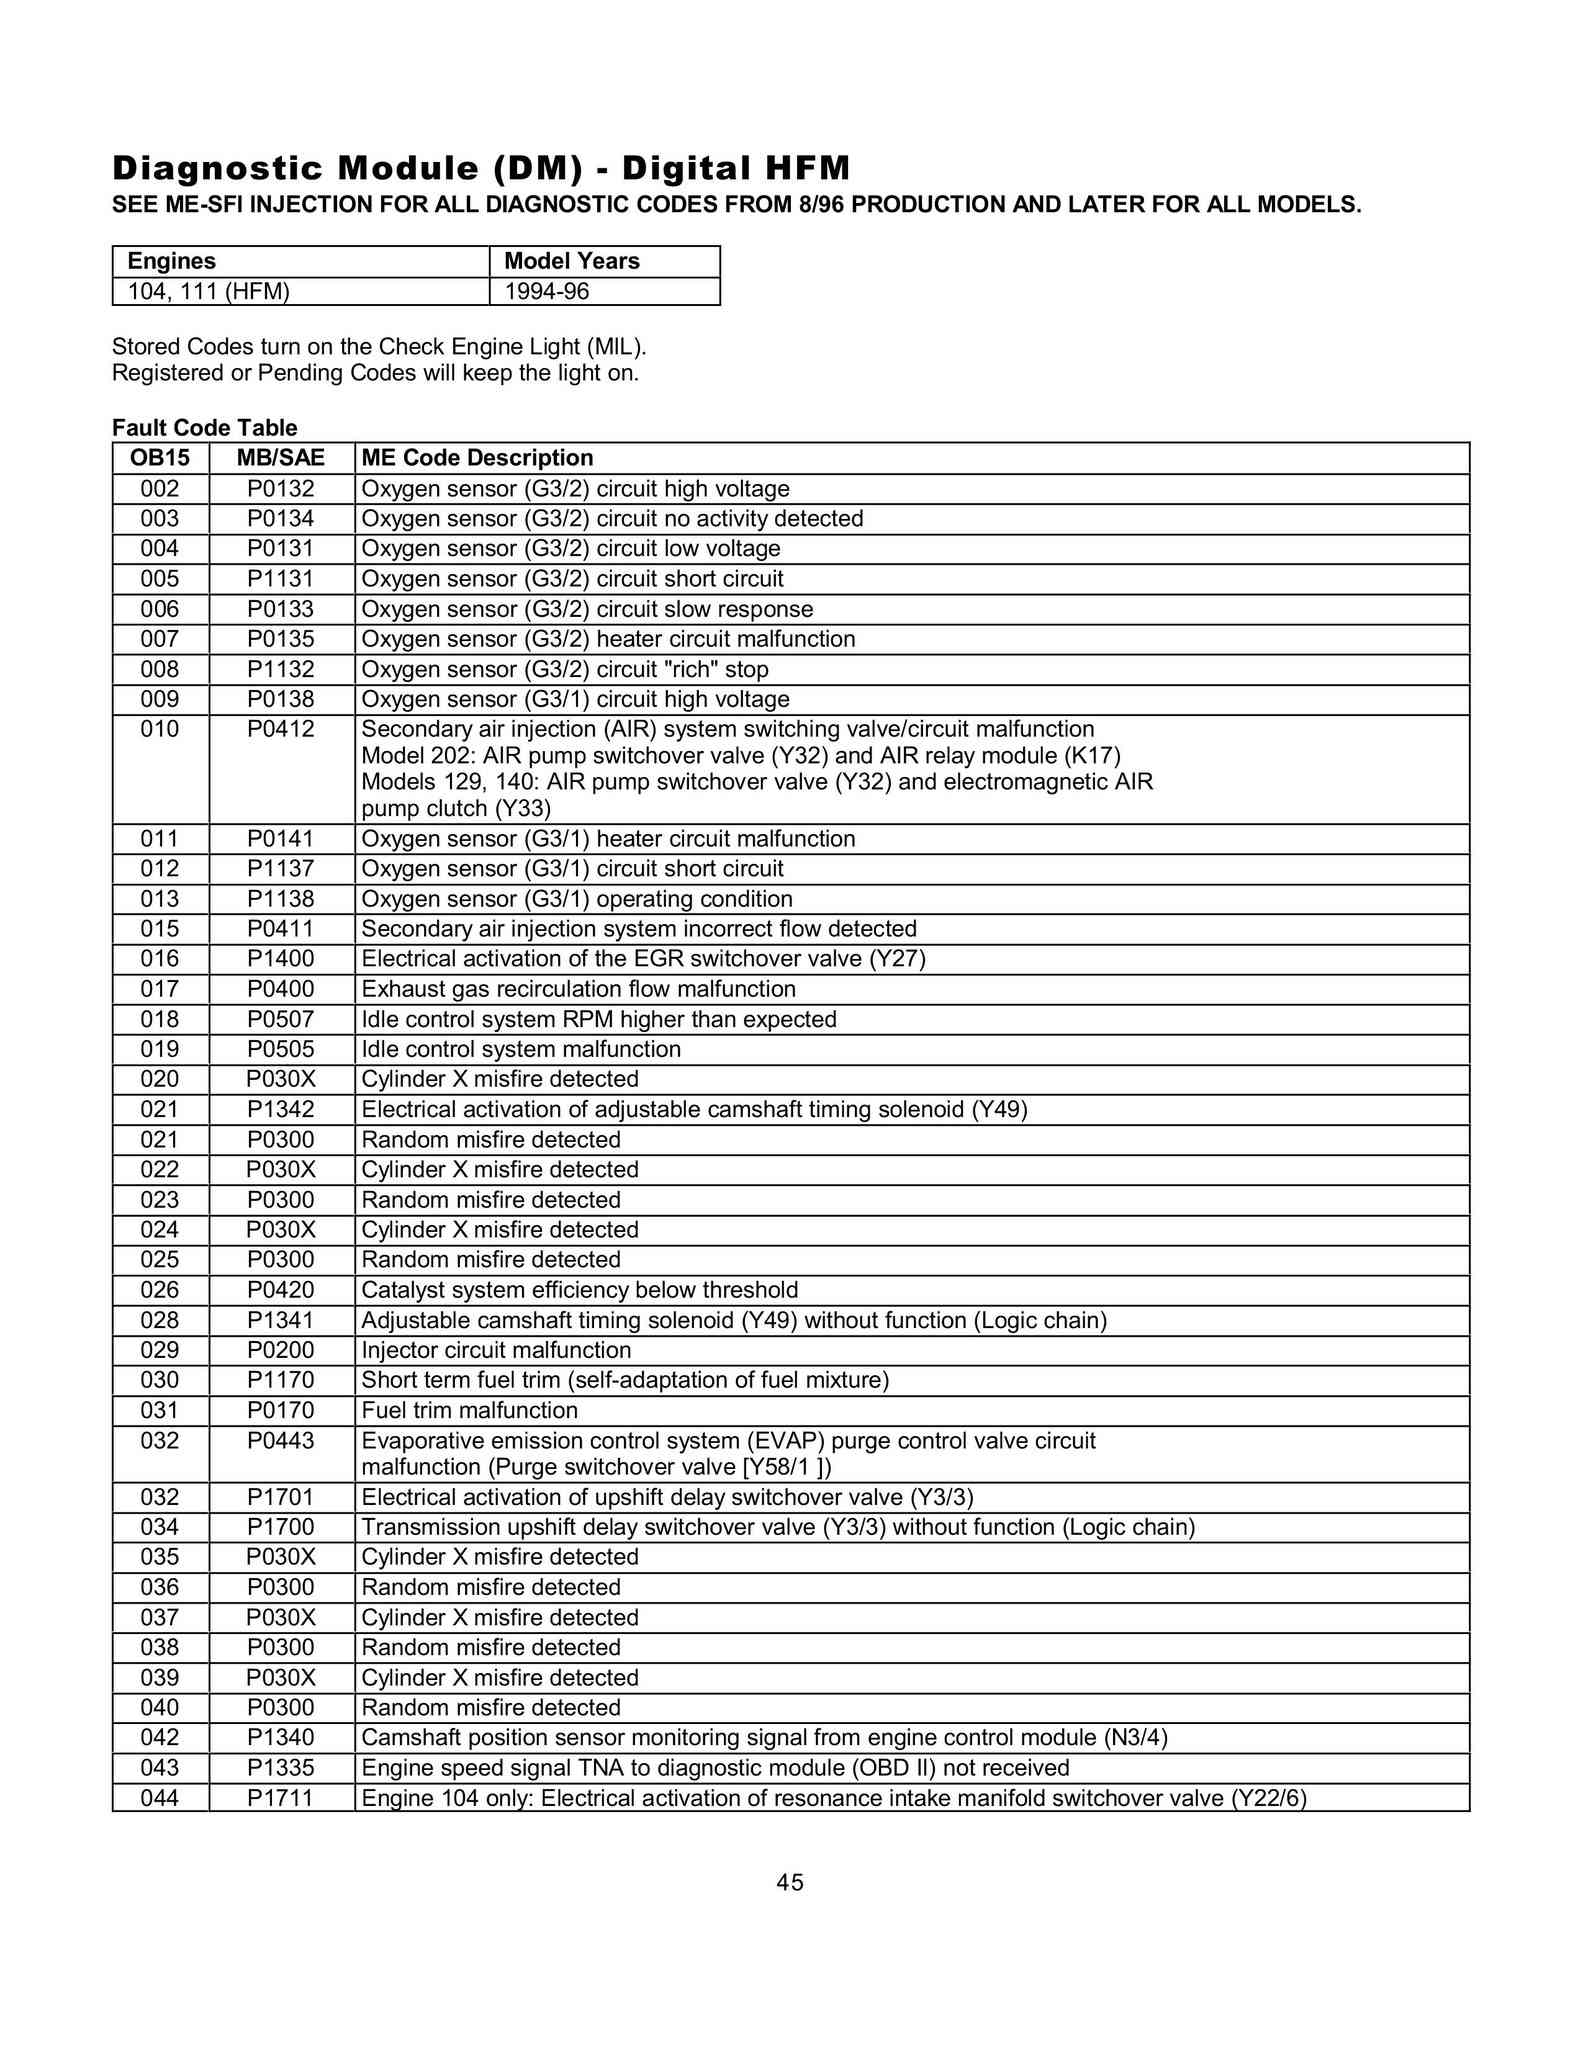 Lista de Códigos de falhas (fault codes) Mercedes-Benz 004512